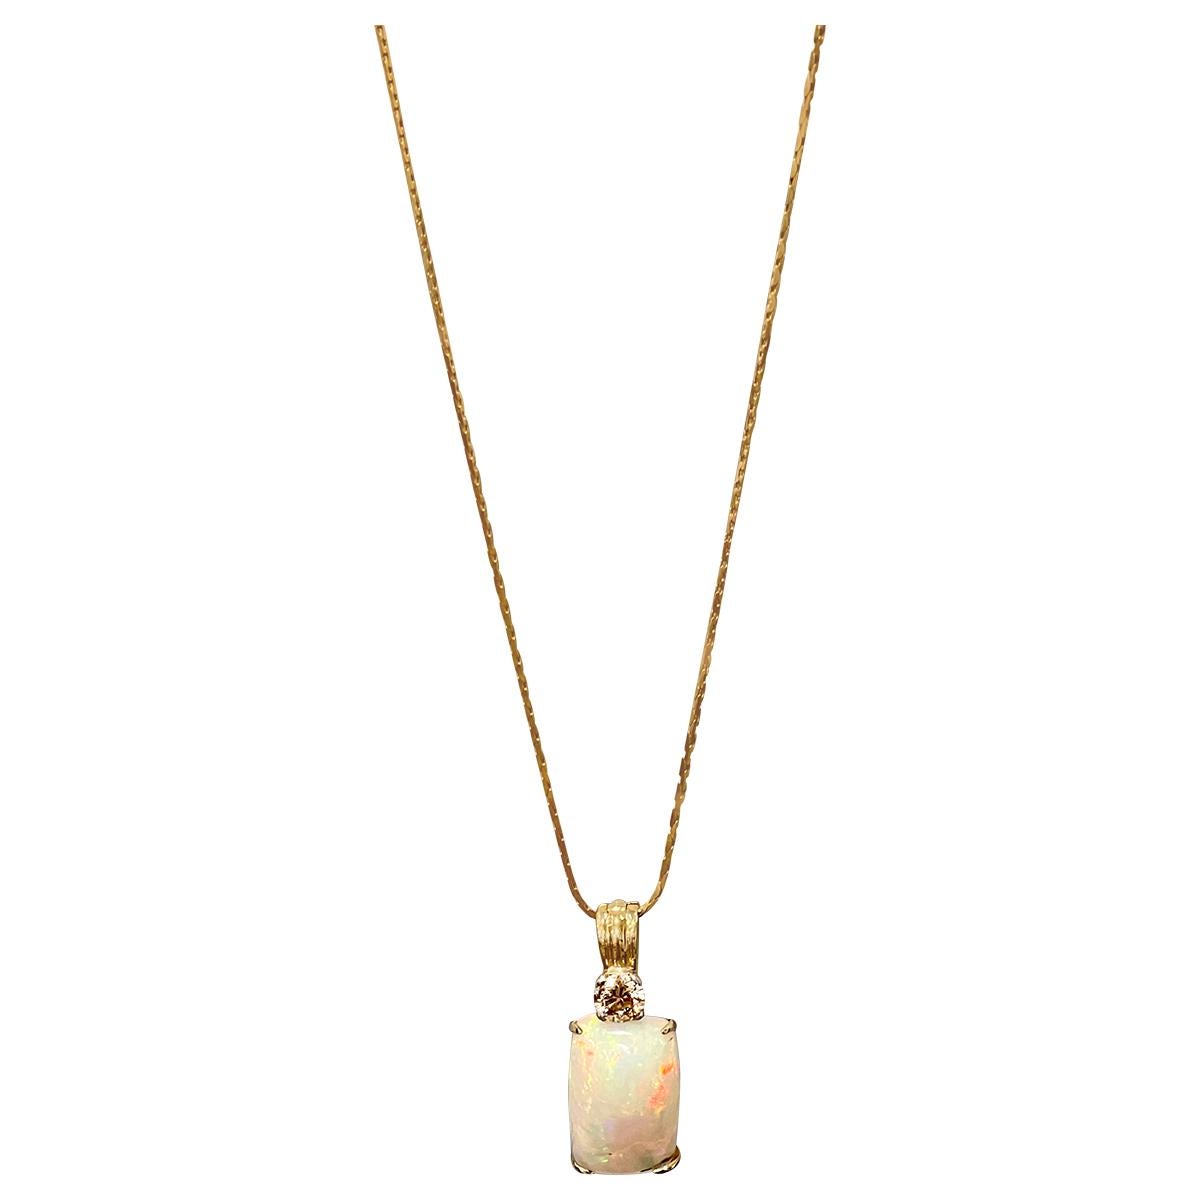 7 Ct Ethiopian Opal & Diamond Pendant / Necklace 14 Karat + 14 Kt Gold Chain For Sale 12